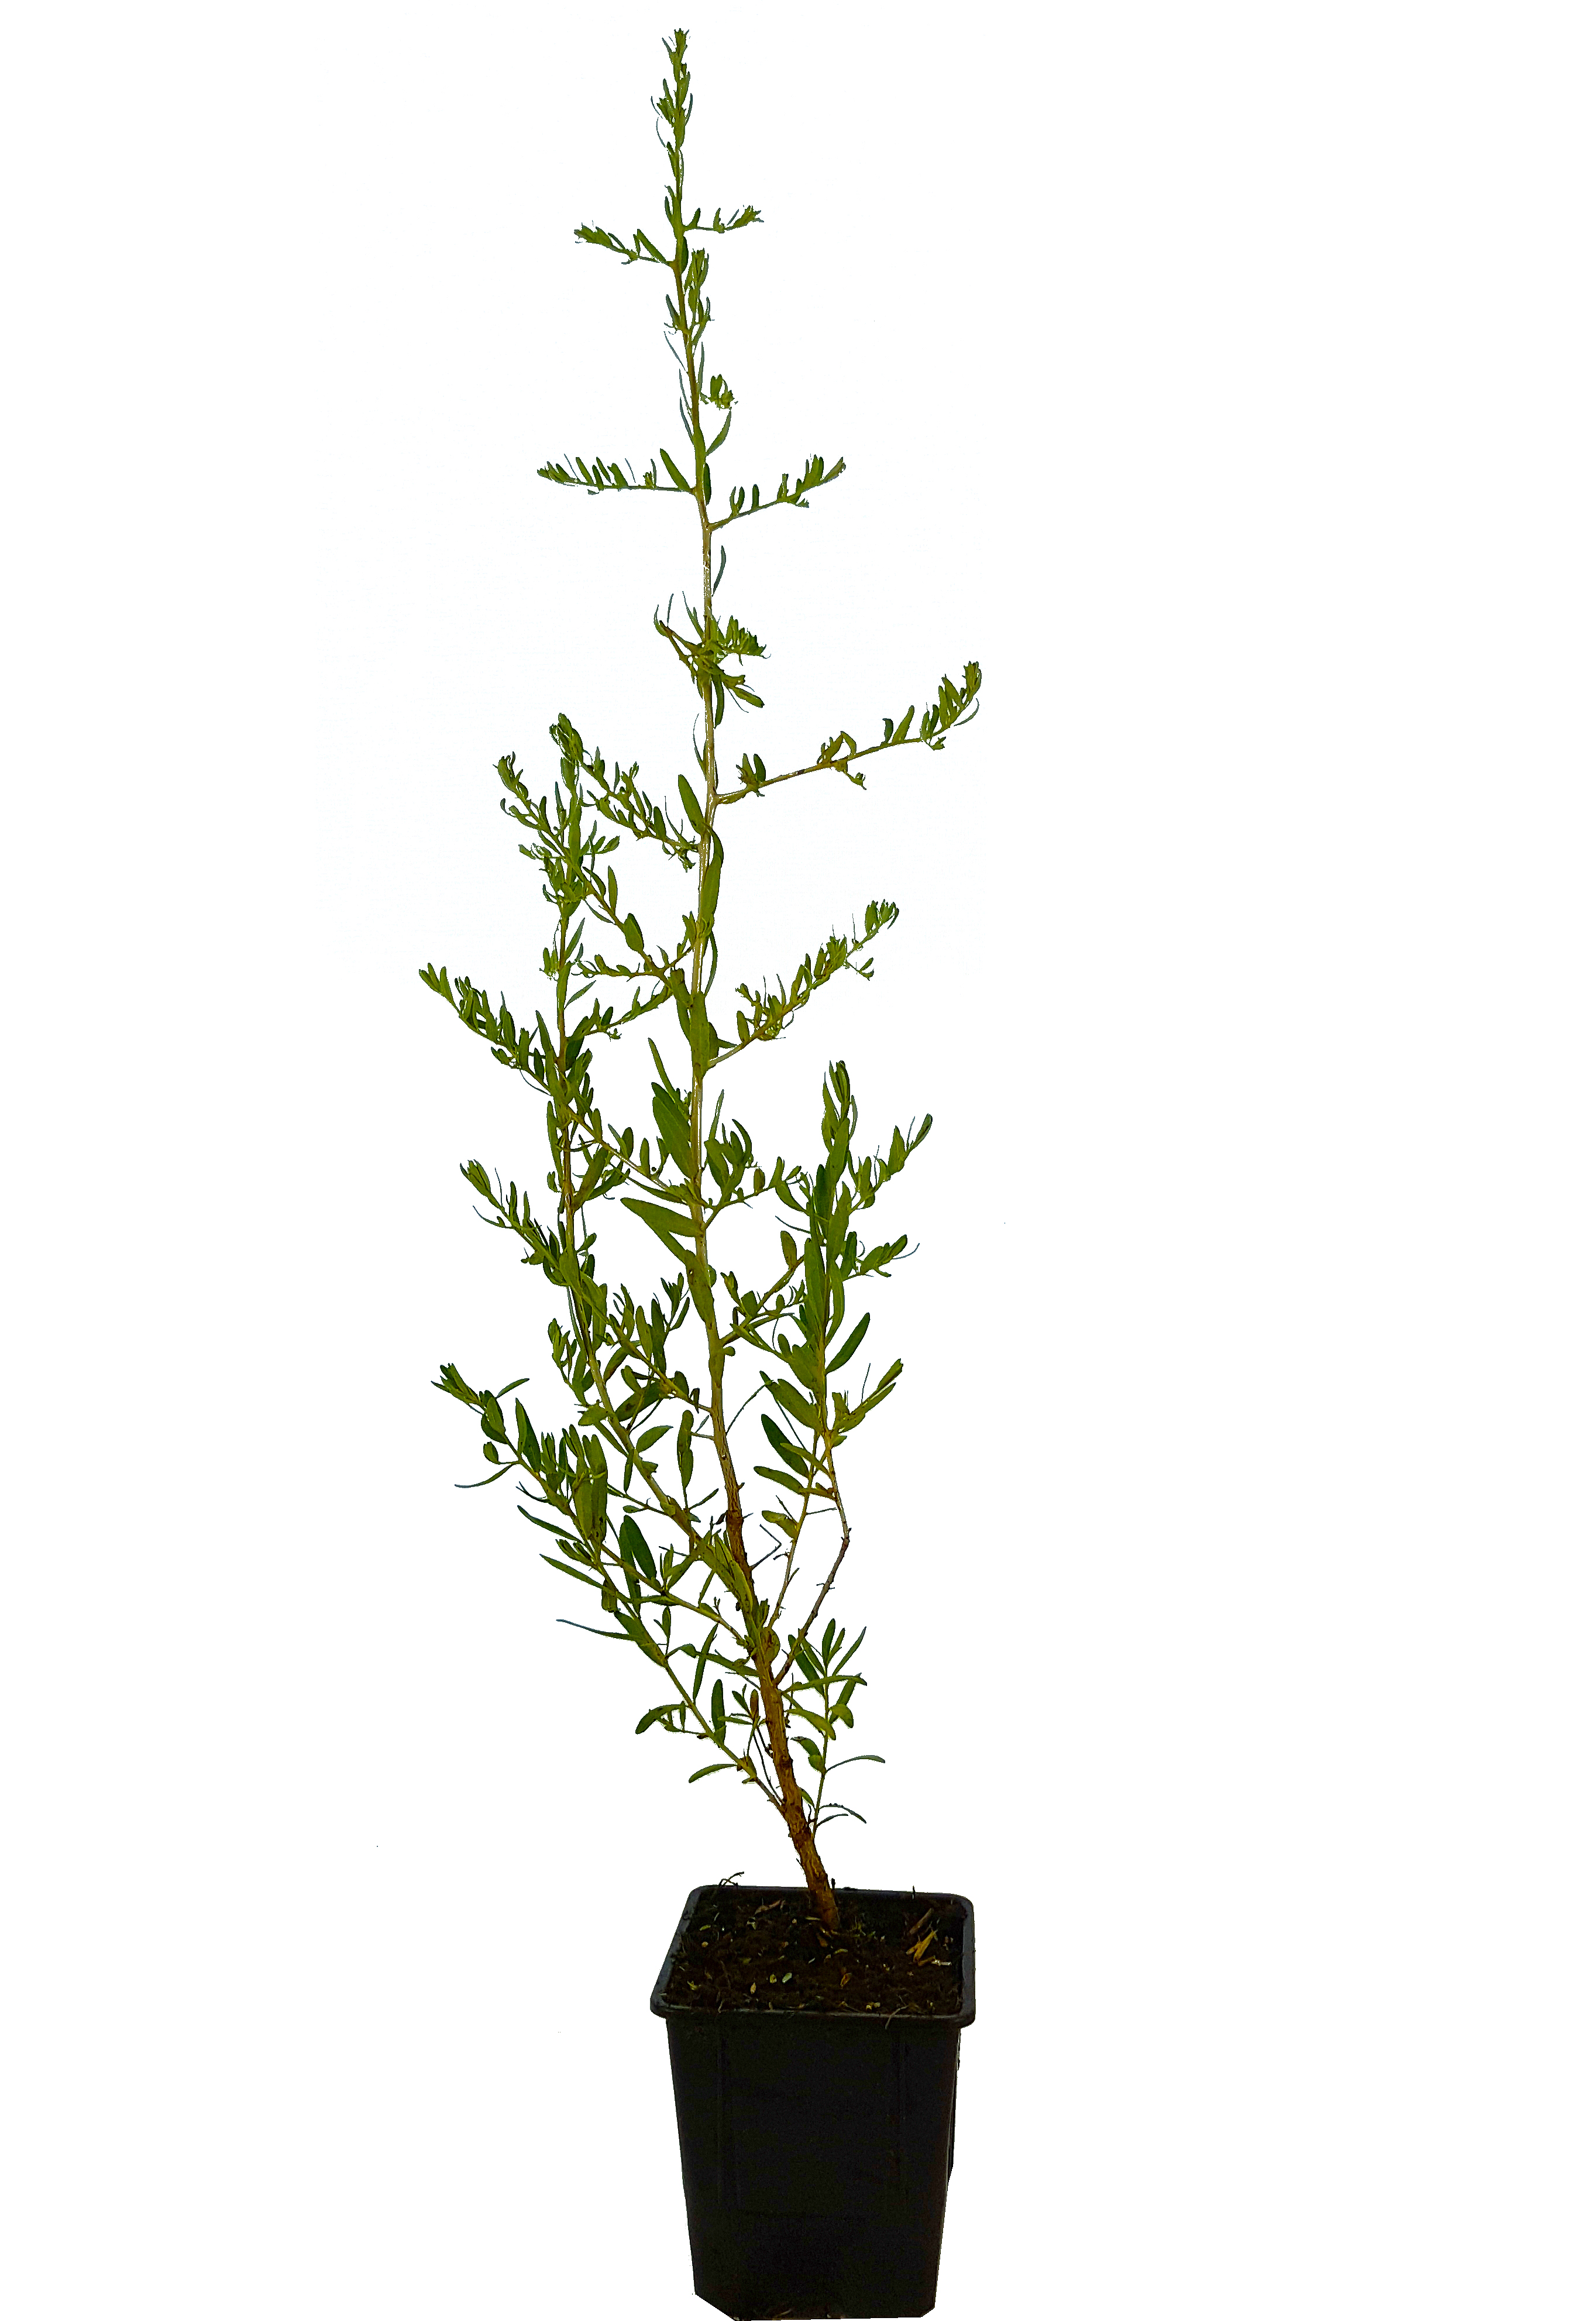 Seedeo® Sanddorn  (Hippophae rhamnoides) ca. 50 cm hoch